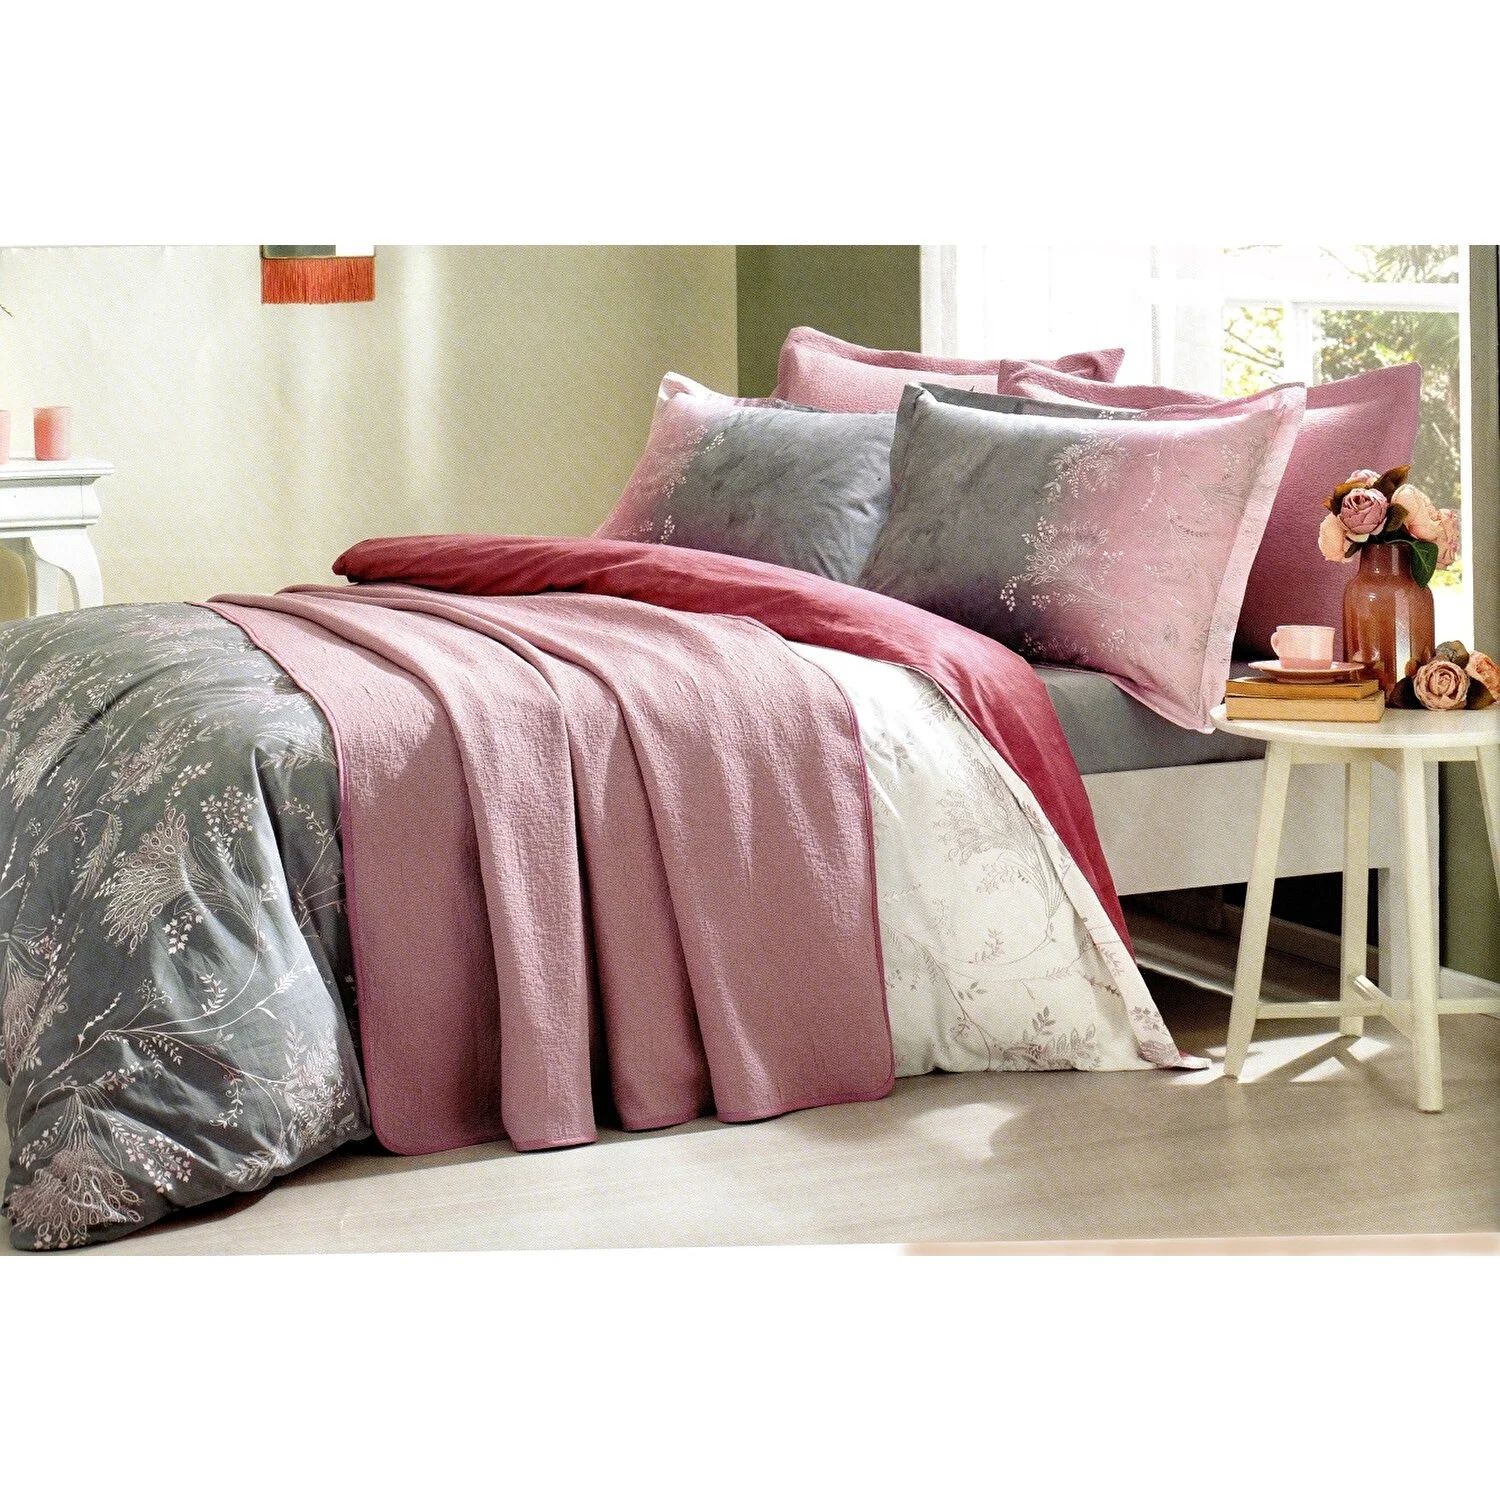 Комплект постельного белья Ozdilek Ditsy Фиолетовый комплект покрывала и пододеяльника для двуспальной кровати свободное женское летнее платье mor mor 1 oo4000 n серое размер m